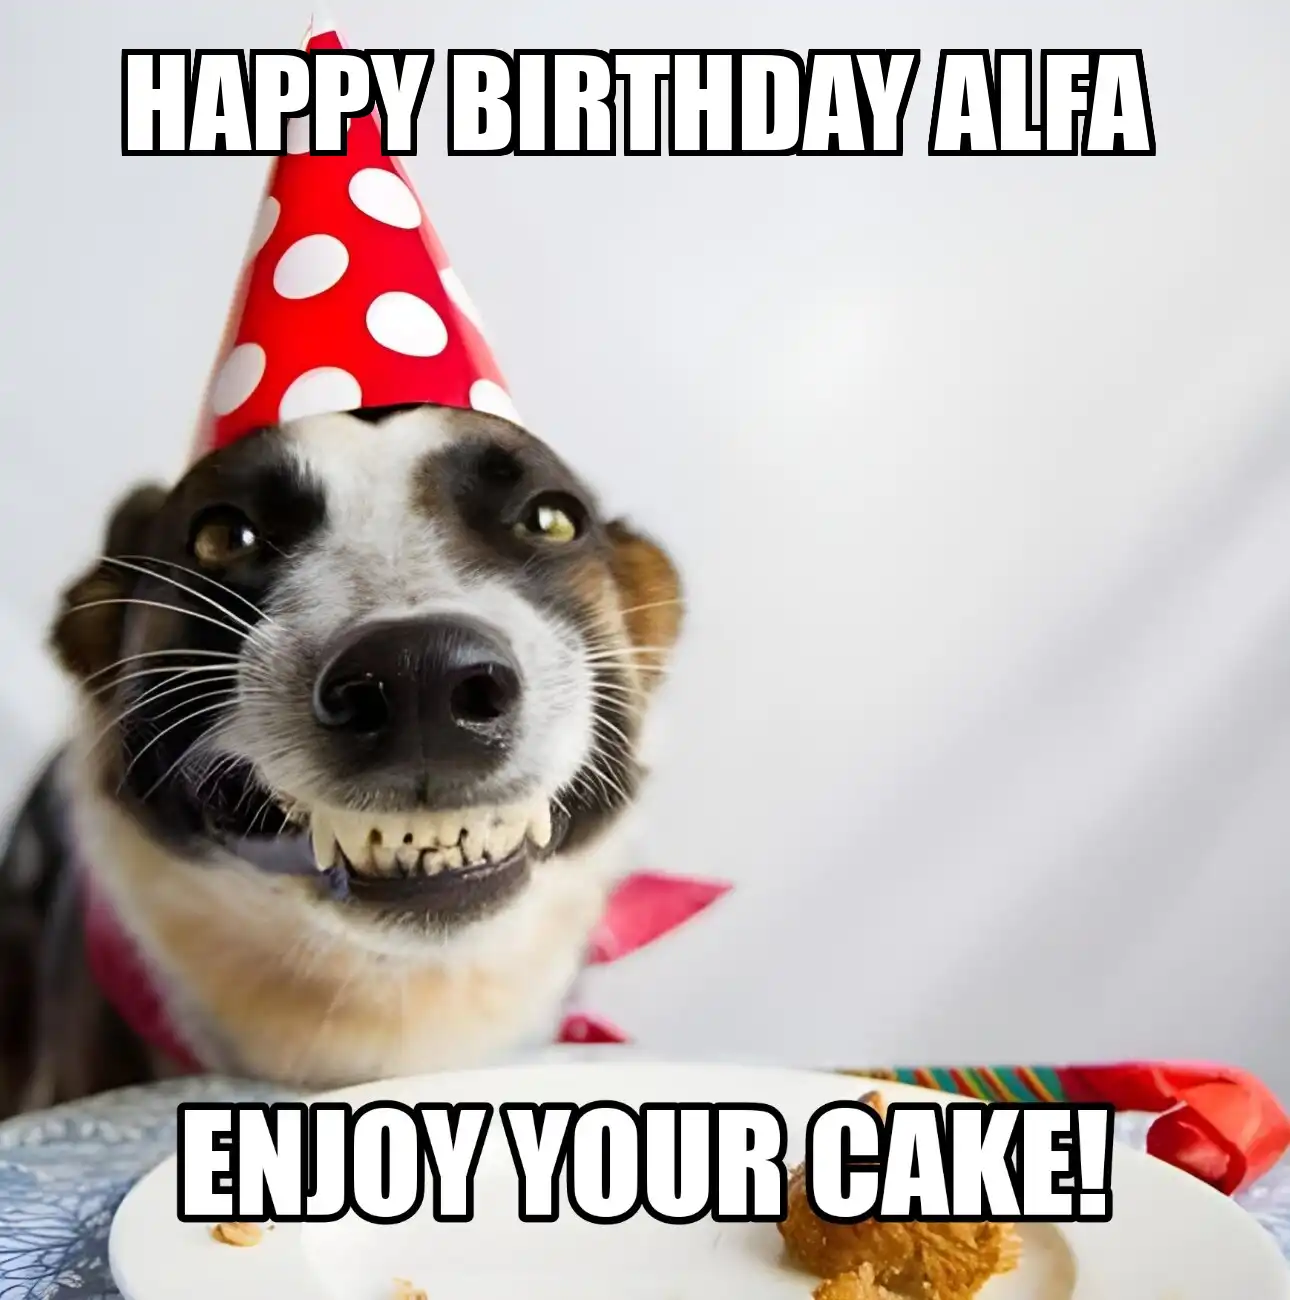 Happy Birthday Alfa Enjoy Your Cake Dog Meme